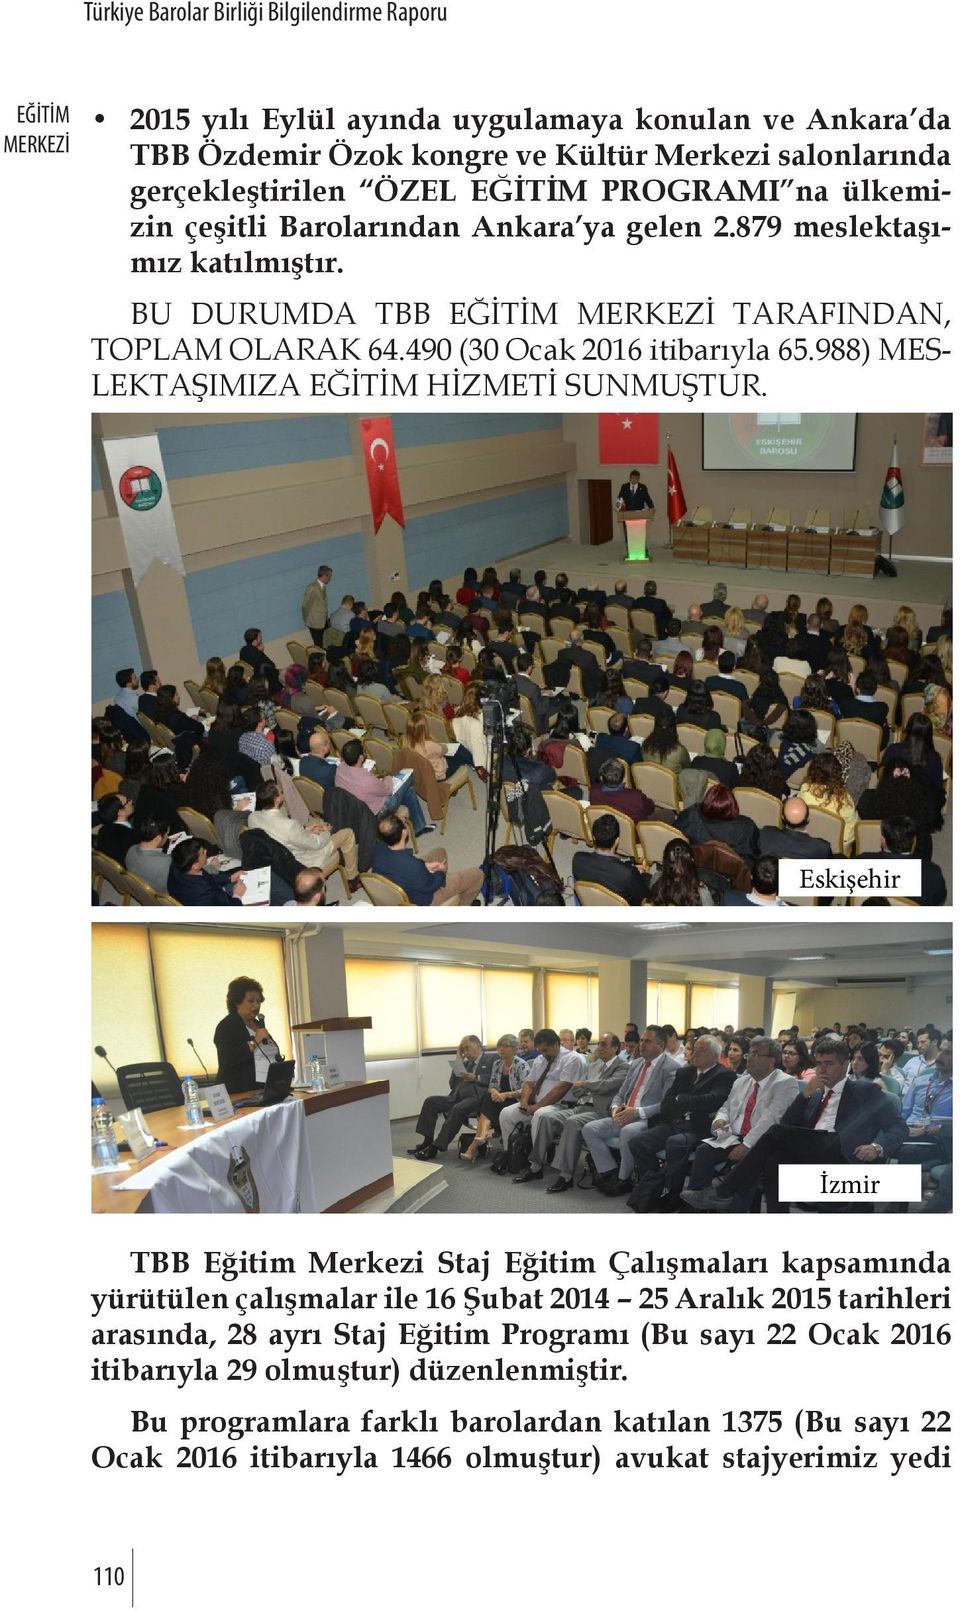 Eskişehir İzmir TBB Eğitim Merkezi Staj Eğitim Çalışmaları kapsamında yürütülen çalışmalar ile 16 Şubat 2014 25 Aralık 2015 tarihleri arasında, 28 ayrı Staj Eğitim Programı